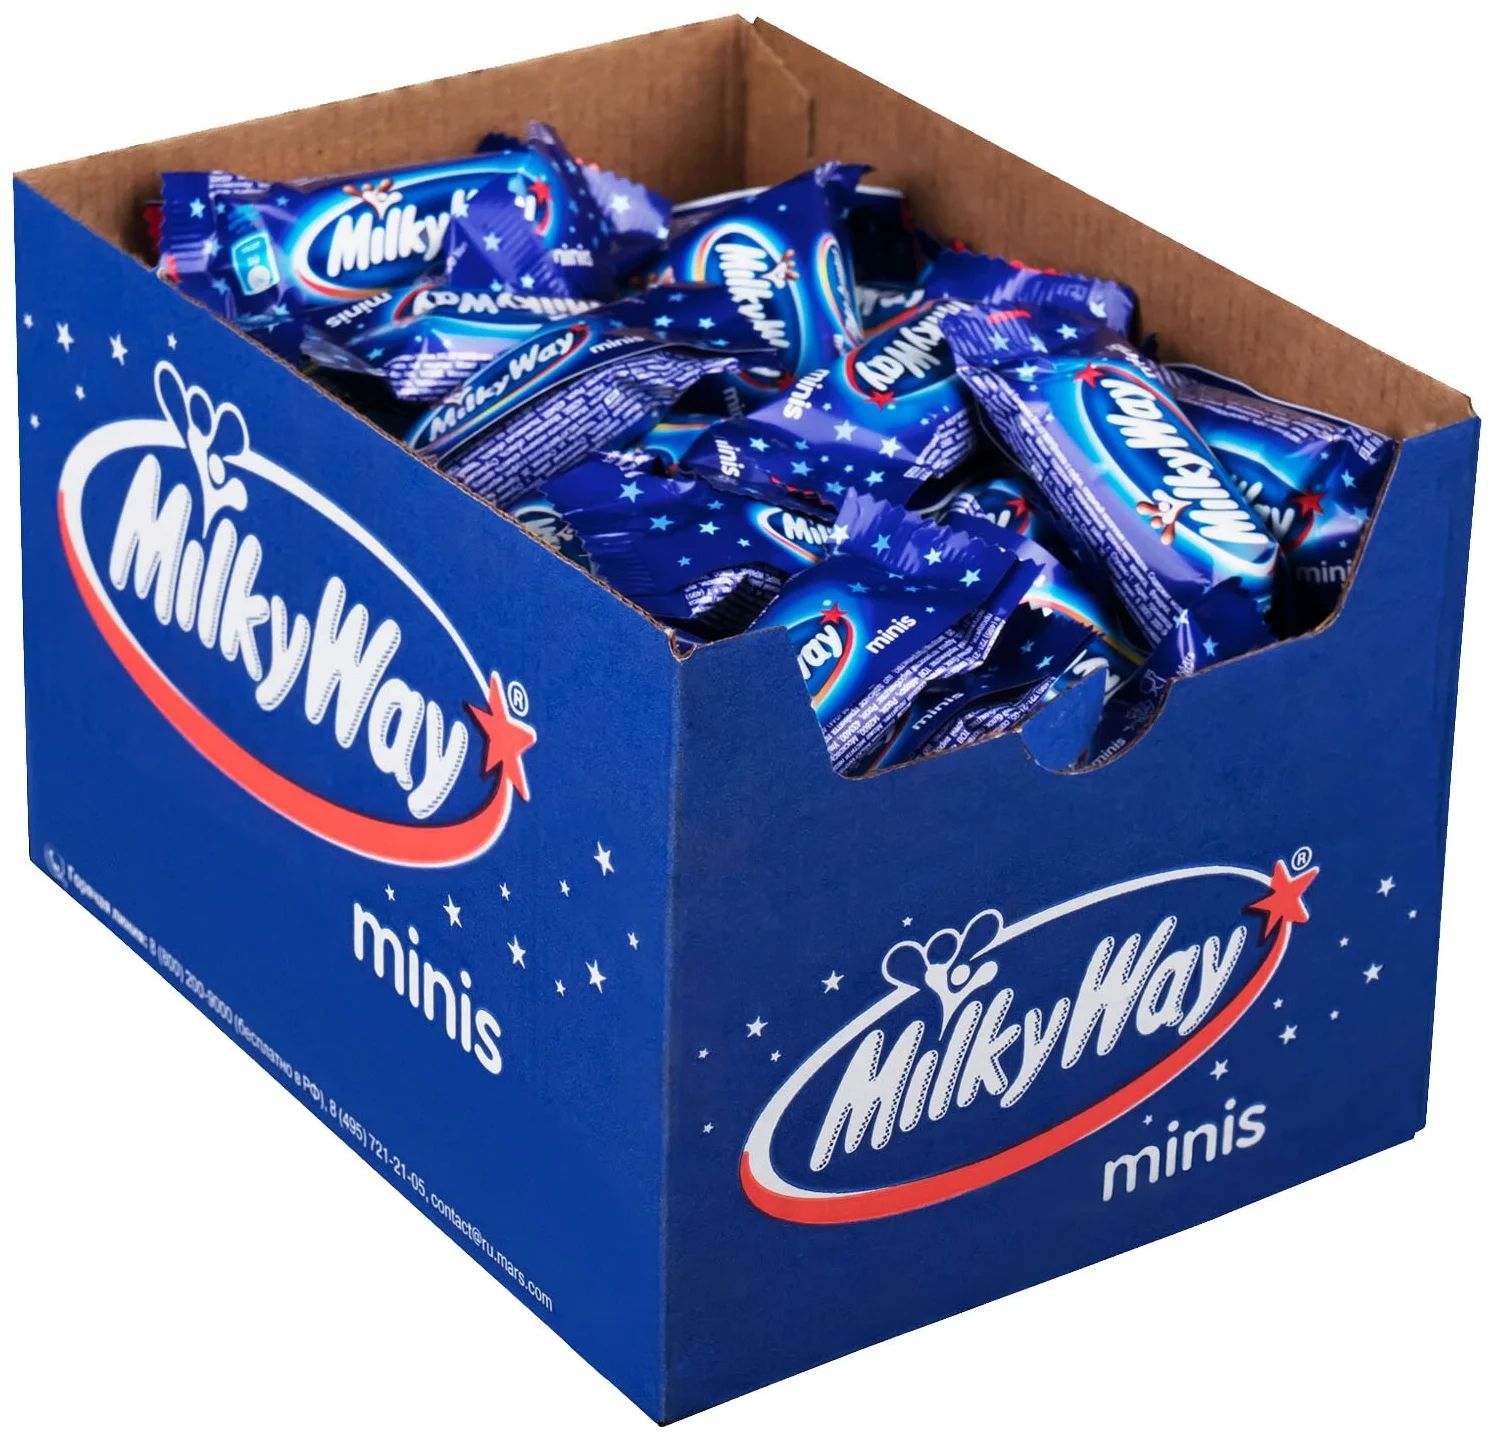 Батончики Milky Way minis, шоколадные, 1 кг - купить в Мегамаркет Москва, цена на Мегамаркет